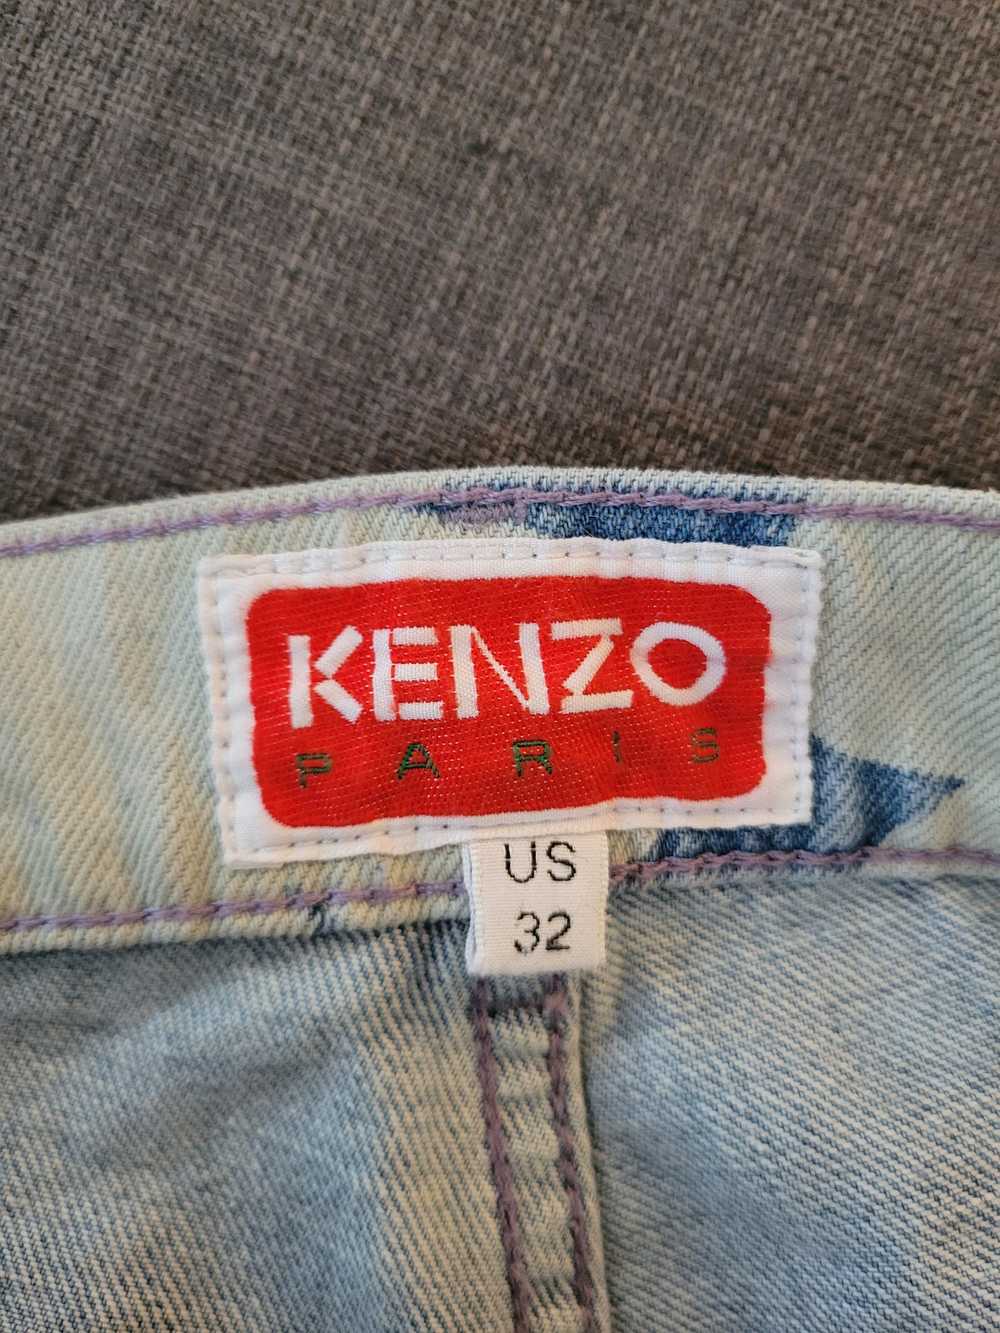 Kenzo Botan Loose Fit Jeans - image 3